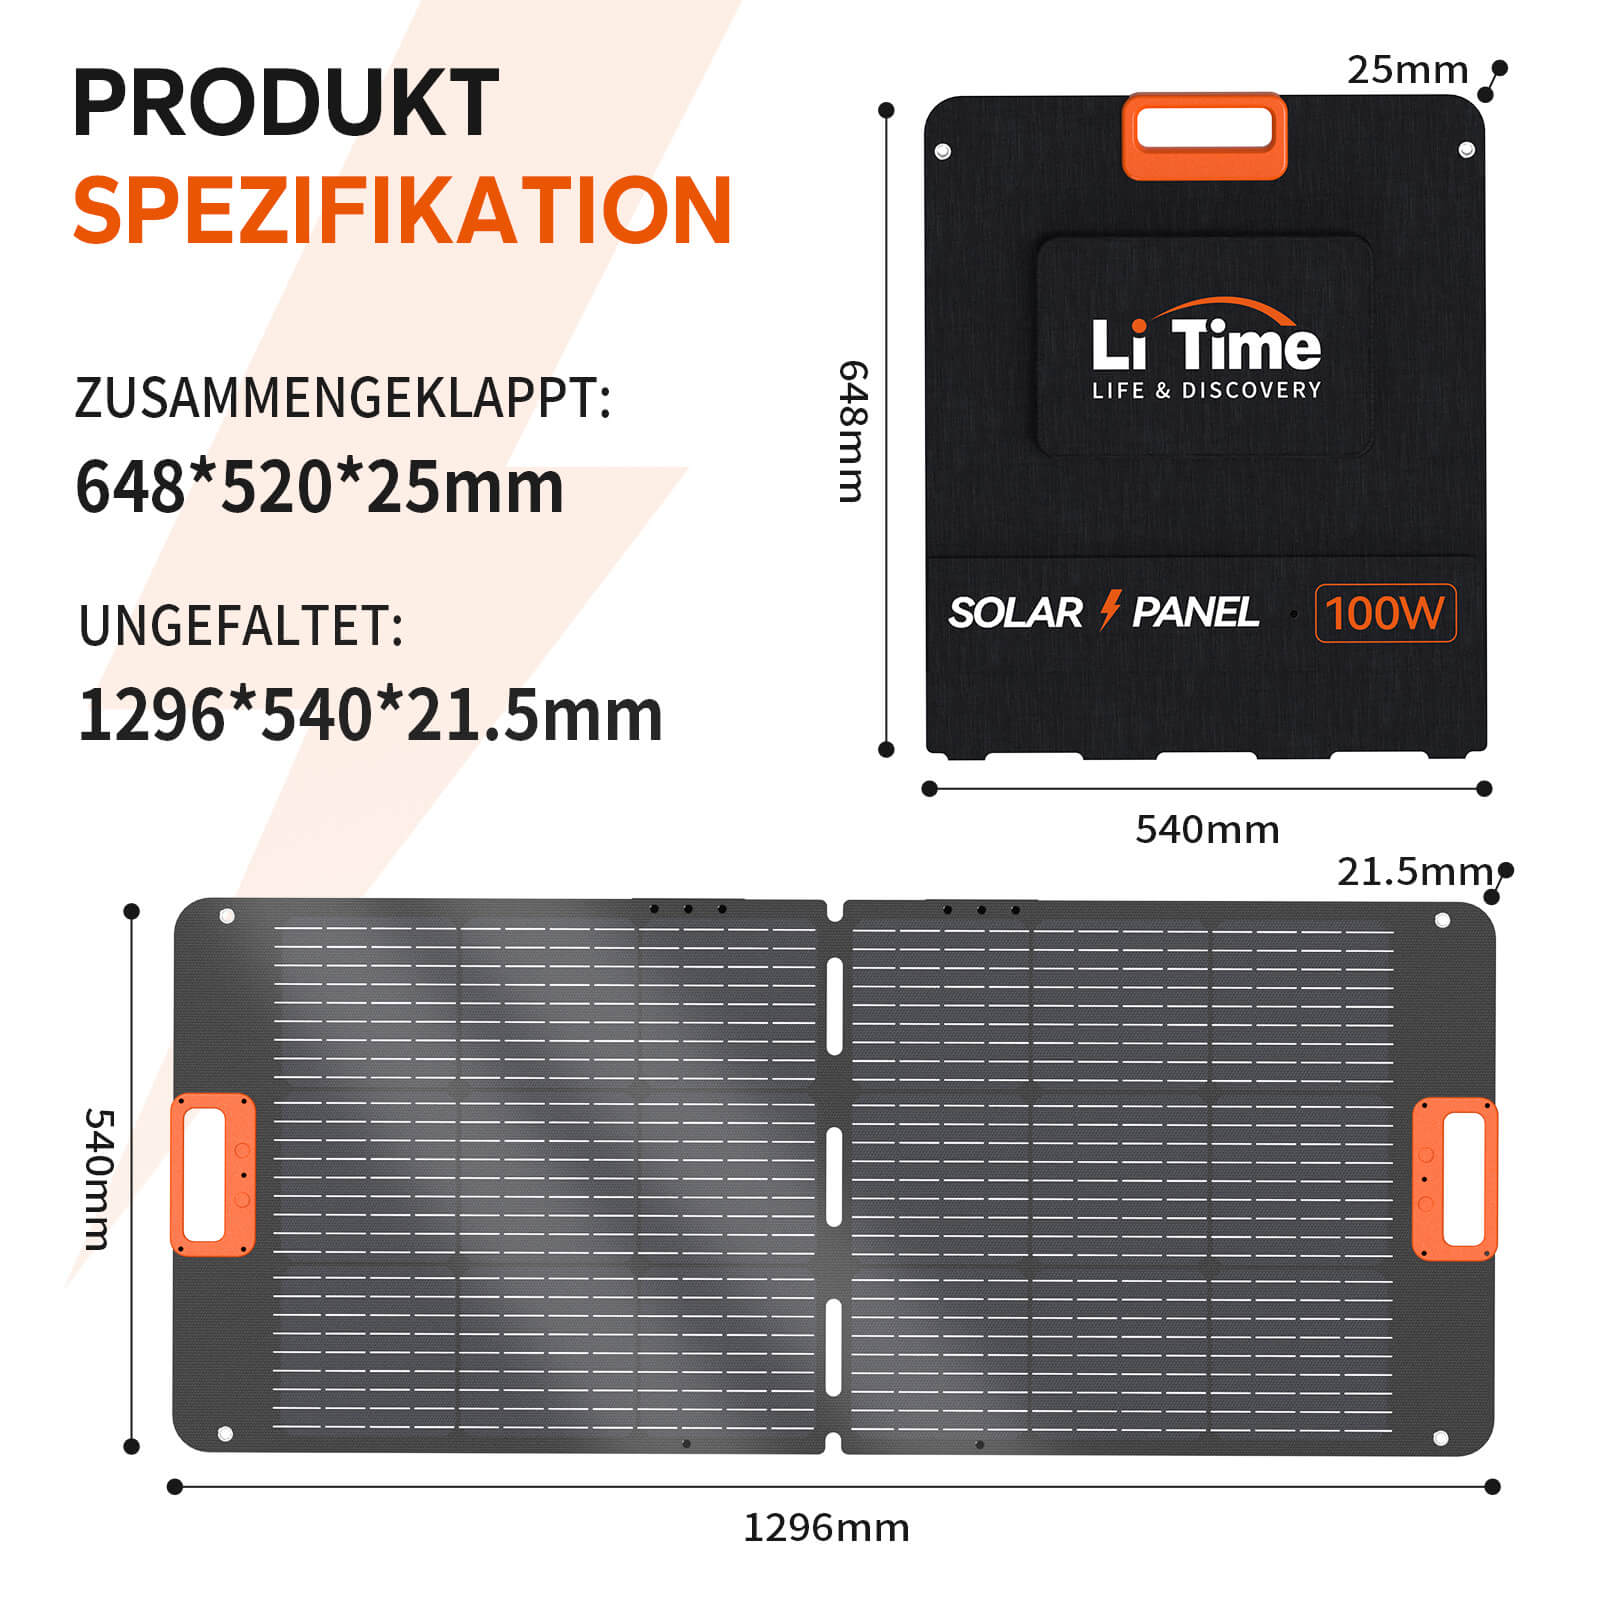 Przenośny panel słoneczny LiTime 100W